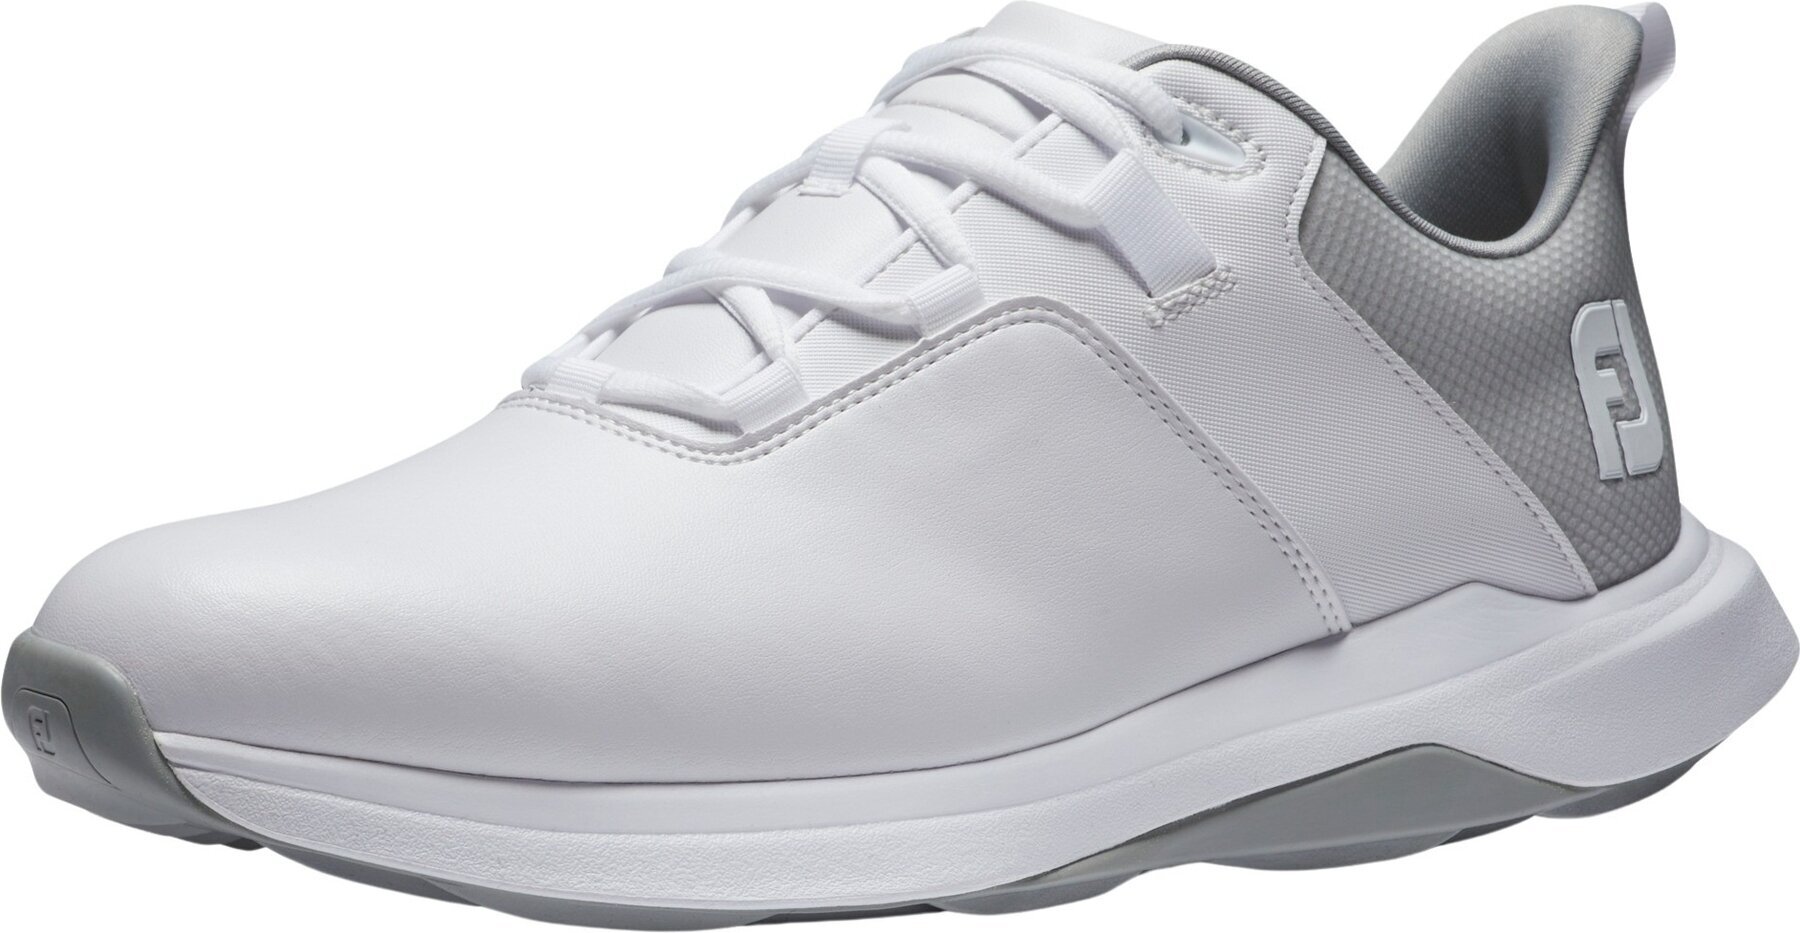 Calçado de golfe para homem Footjoy ProLite White/Grey 44,5 Calçado de golfe para homem